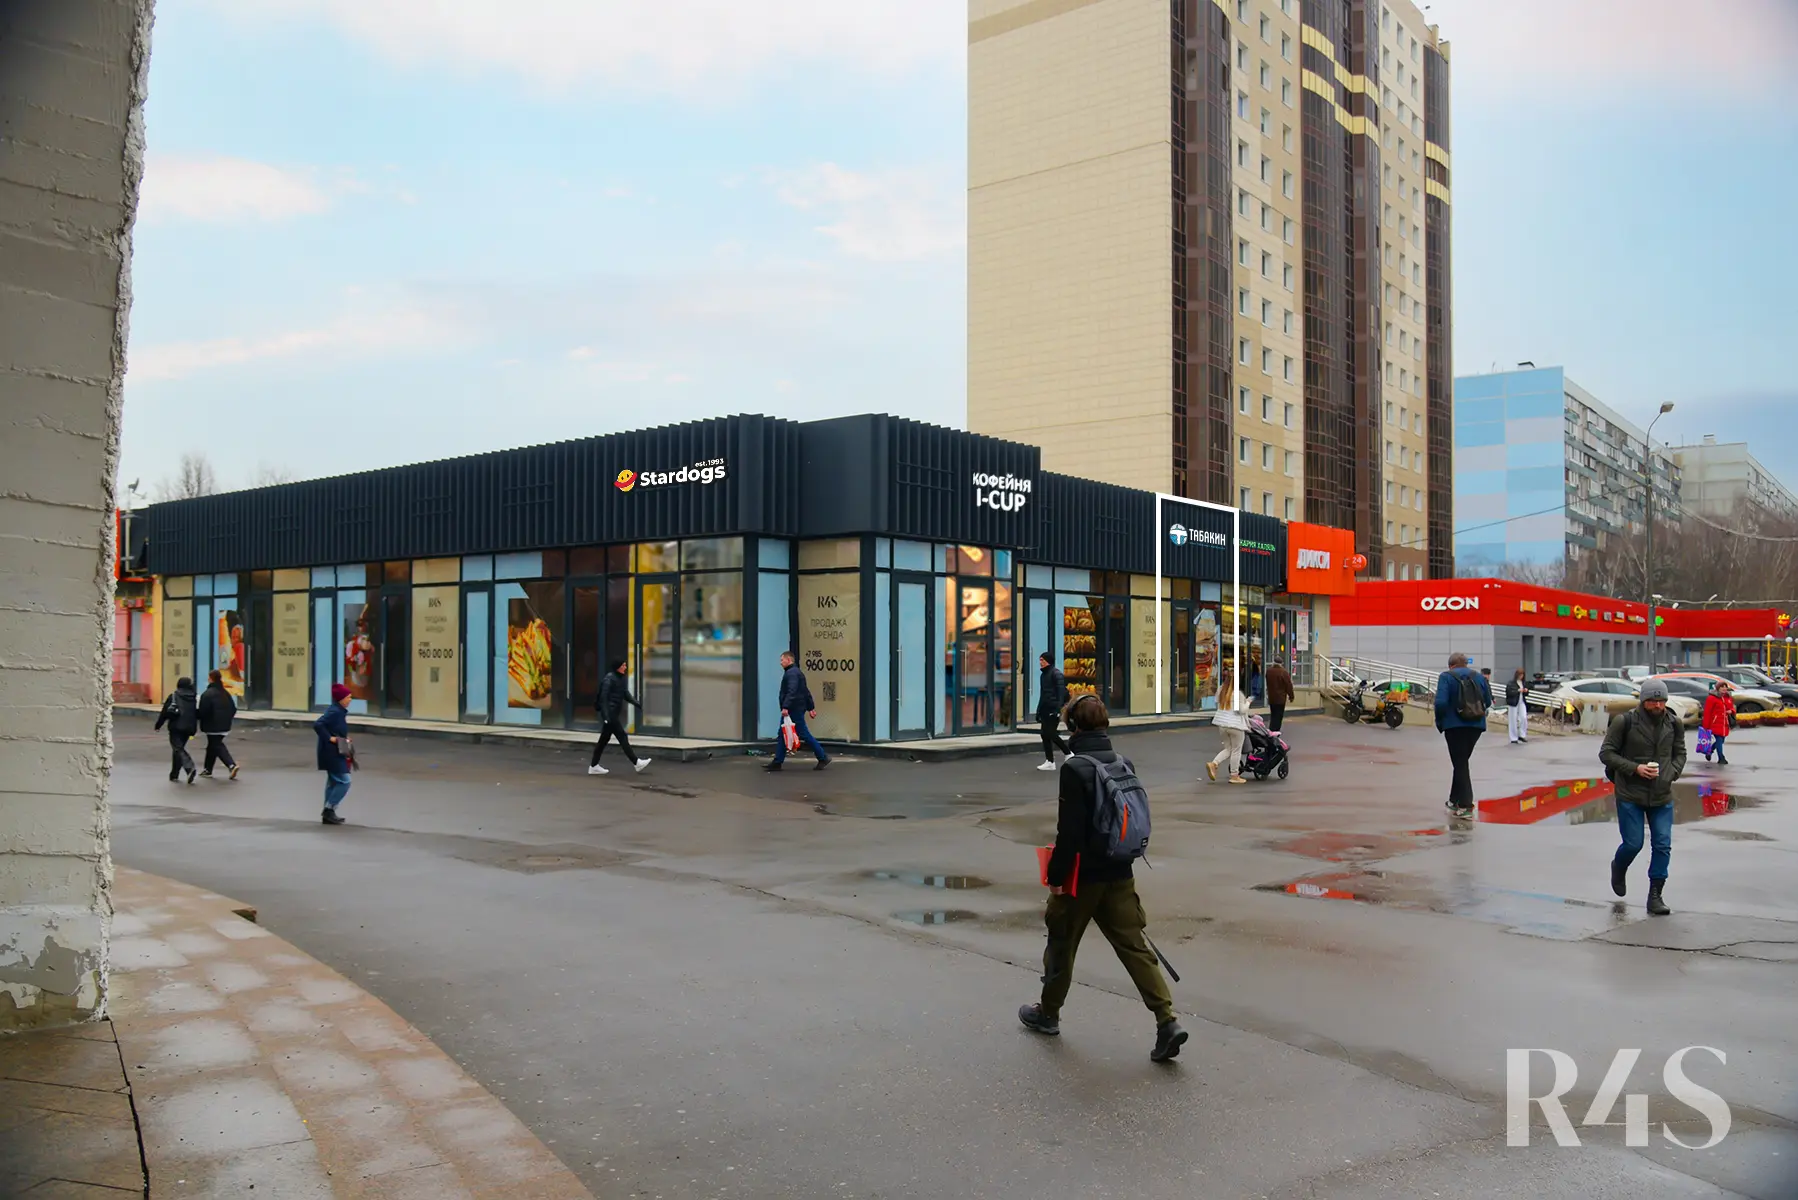 Продажа готового арендного бизнеса площадью 27.7 м2 в Москве: Шипиловский проезд, 39к3 R4S | Realty4Sale